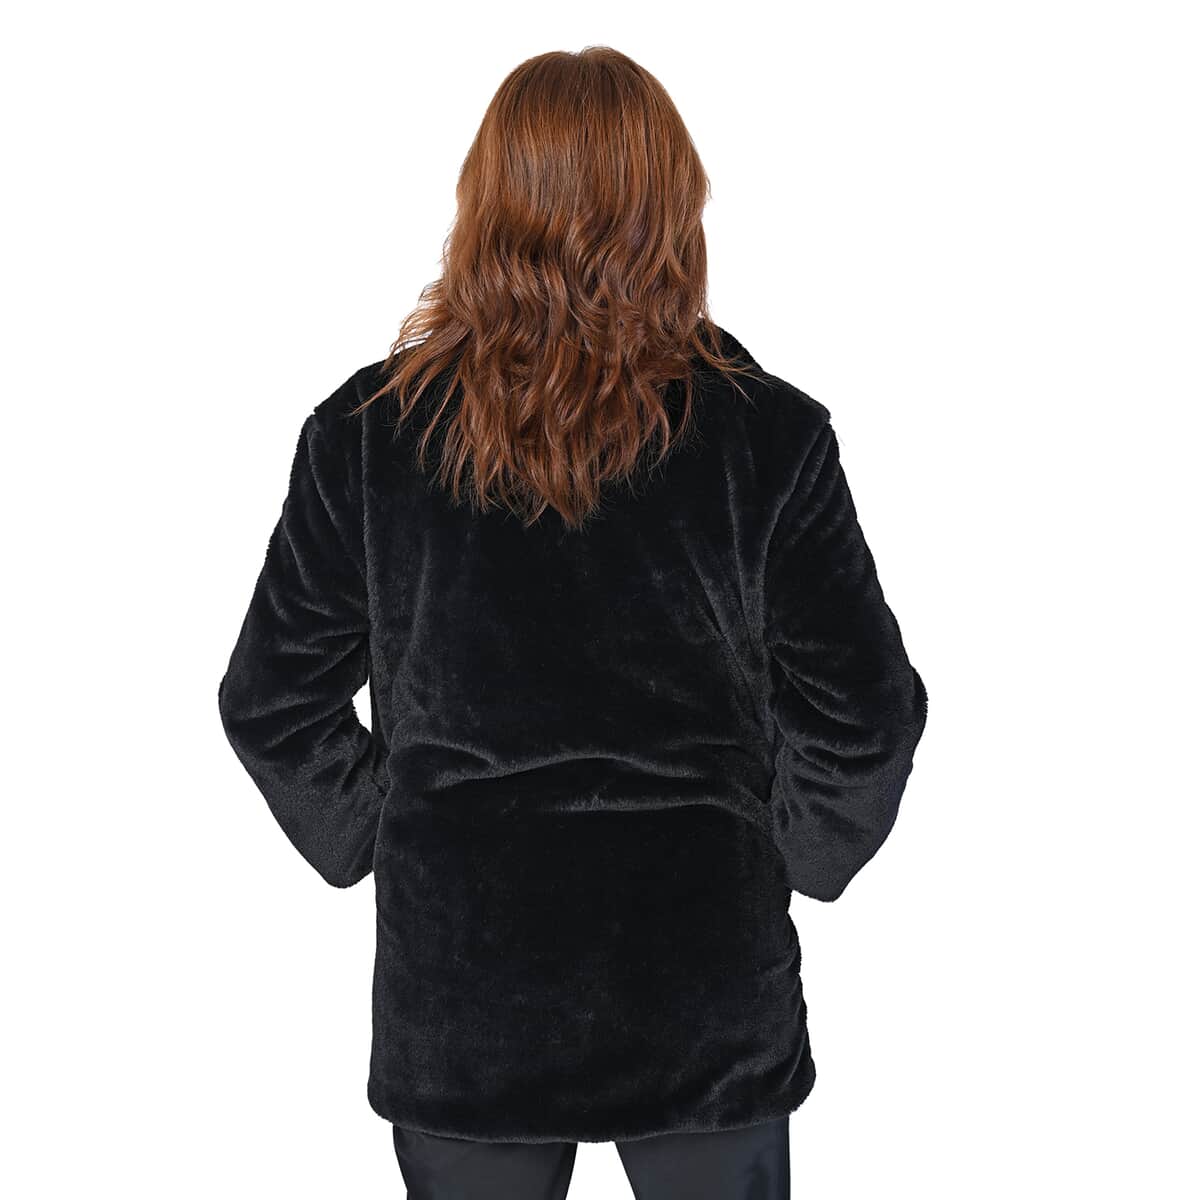 PASSAGE Black Faux Fur Solid Color Coat - L (44"x31") image number 1